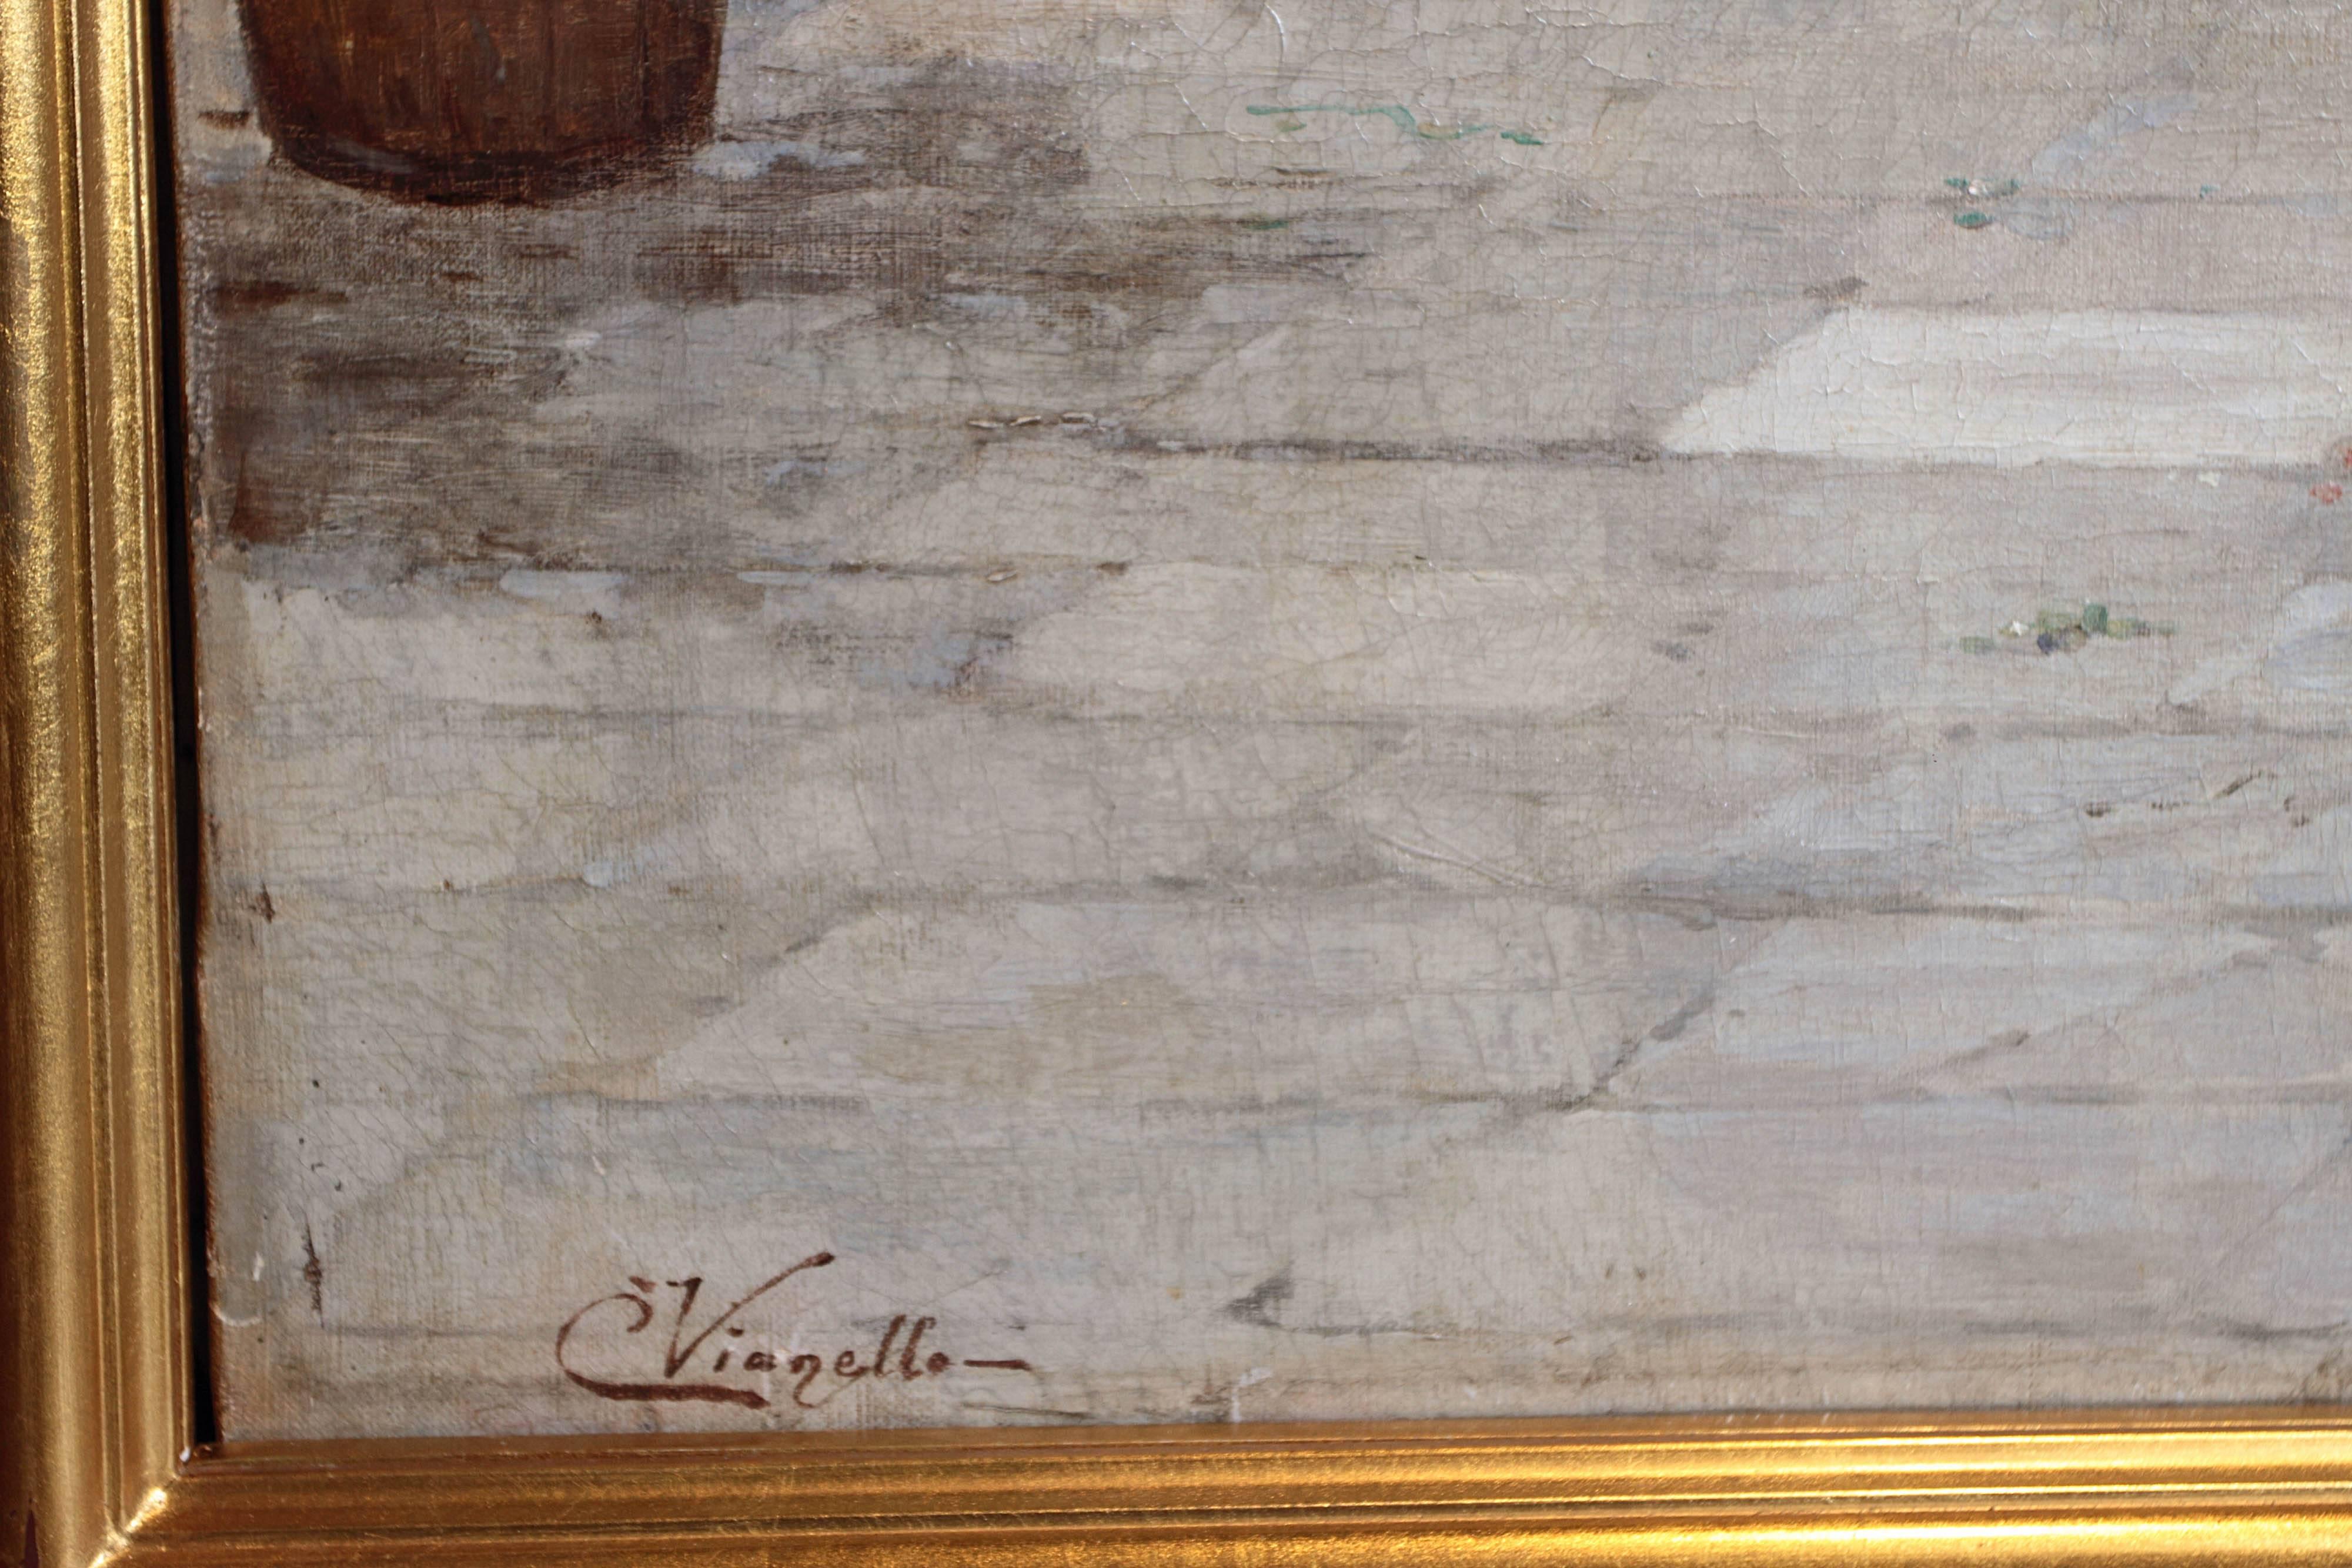 19th Century Italian Oil on Canvas Signed Cesare Vianello 1